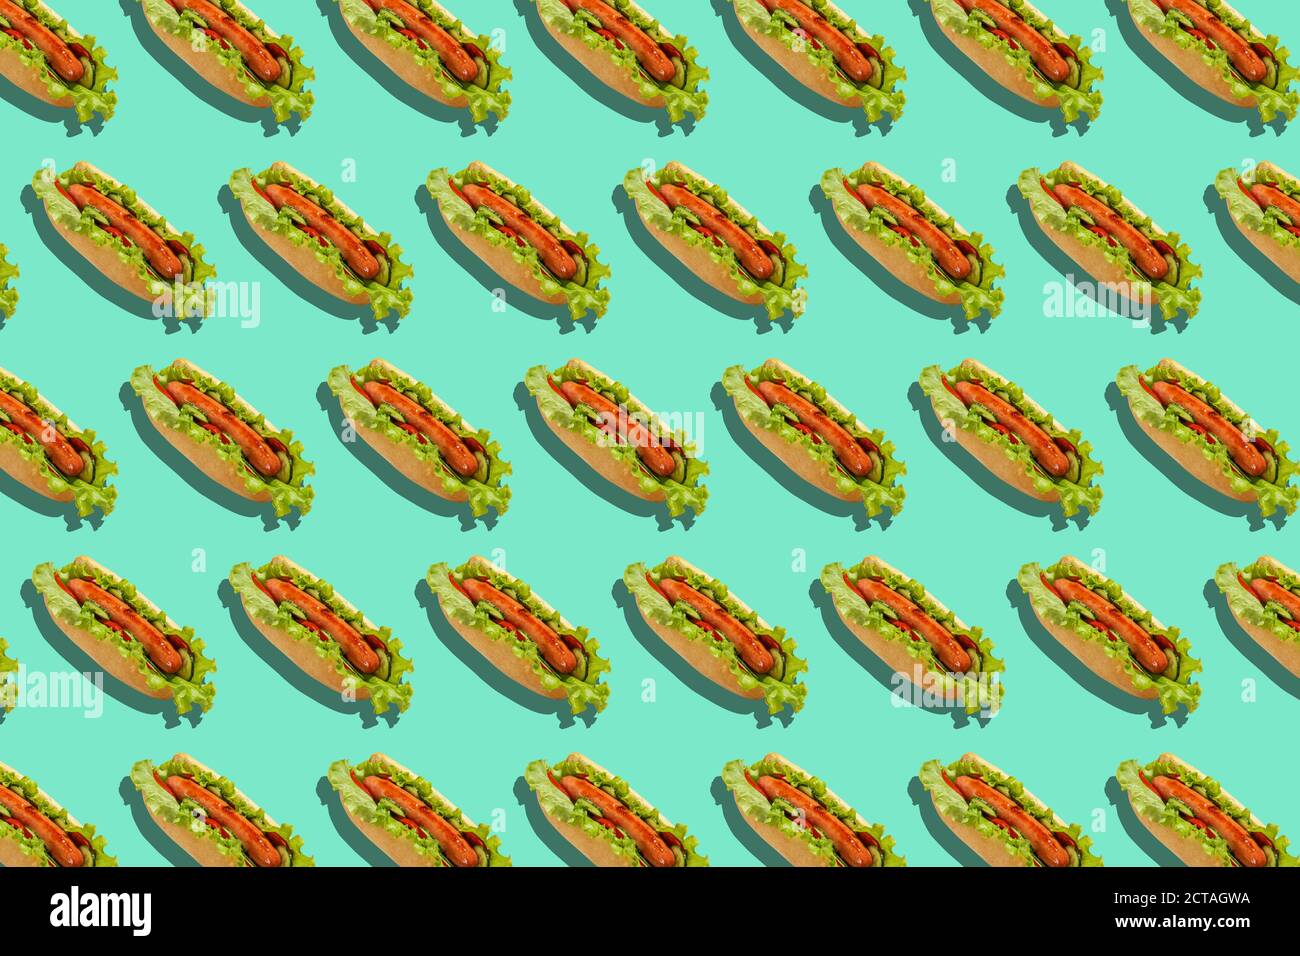 Gesunde Fast Food und Lieferung für die Party. Hot Dogs mit Würstchen, Salat und Gemüse auf türkisfarbenem Hintergrund Stockfoto